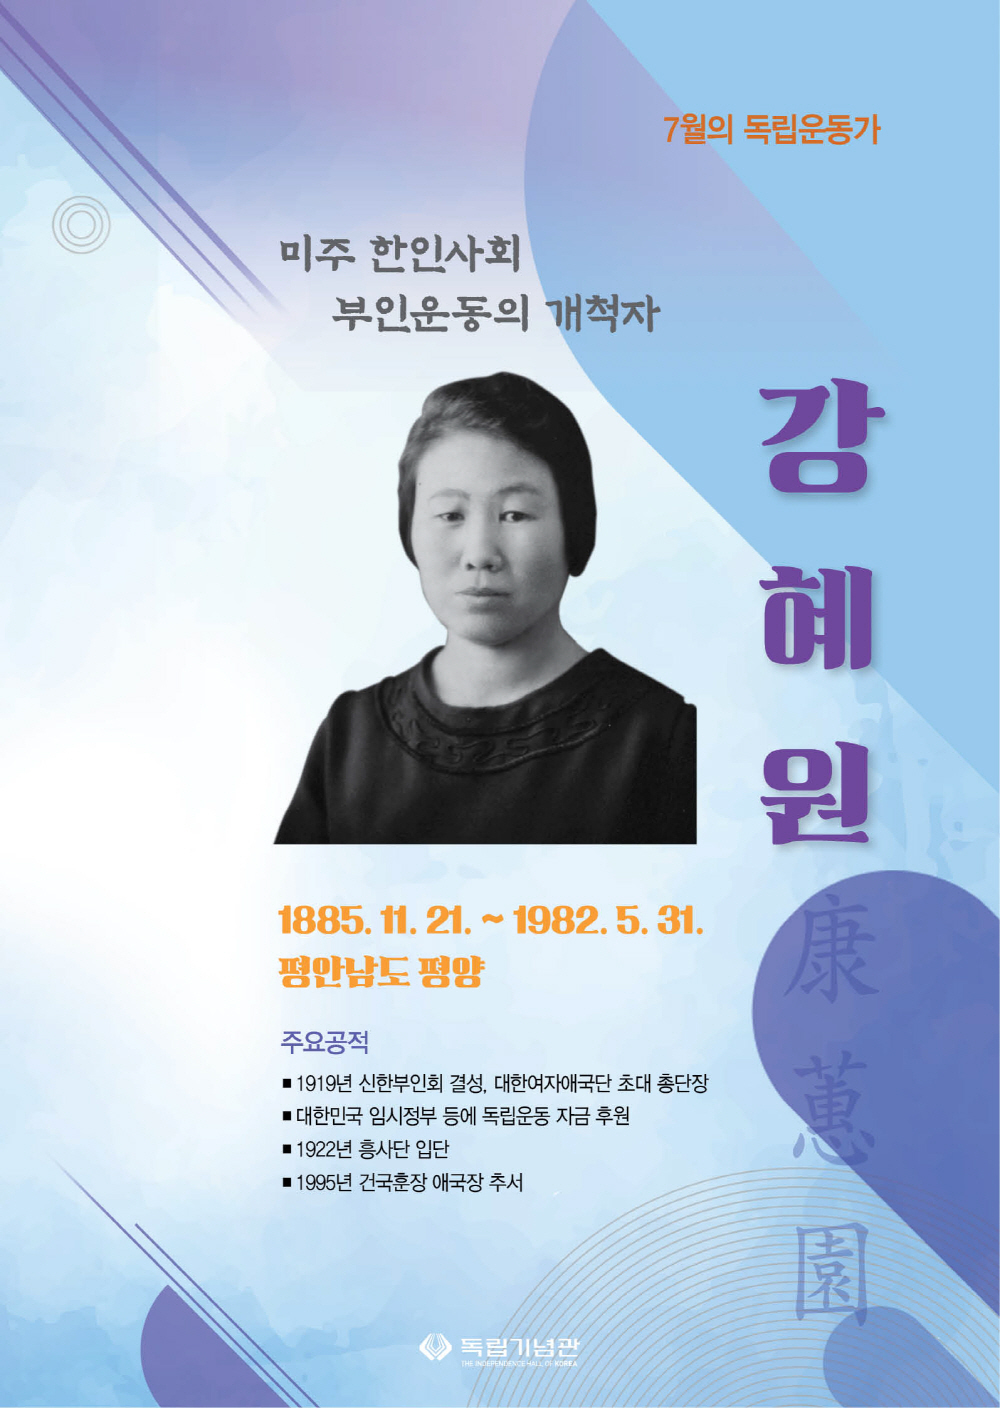 7월의 독립운동가 강혜원